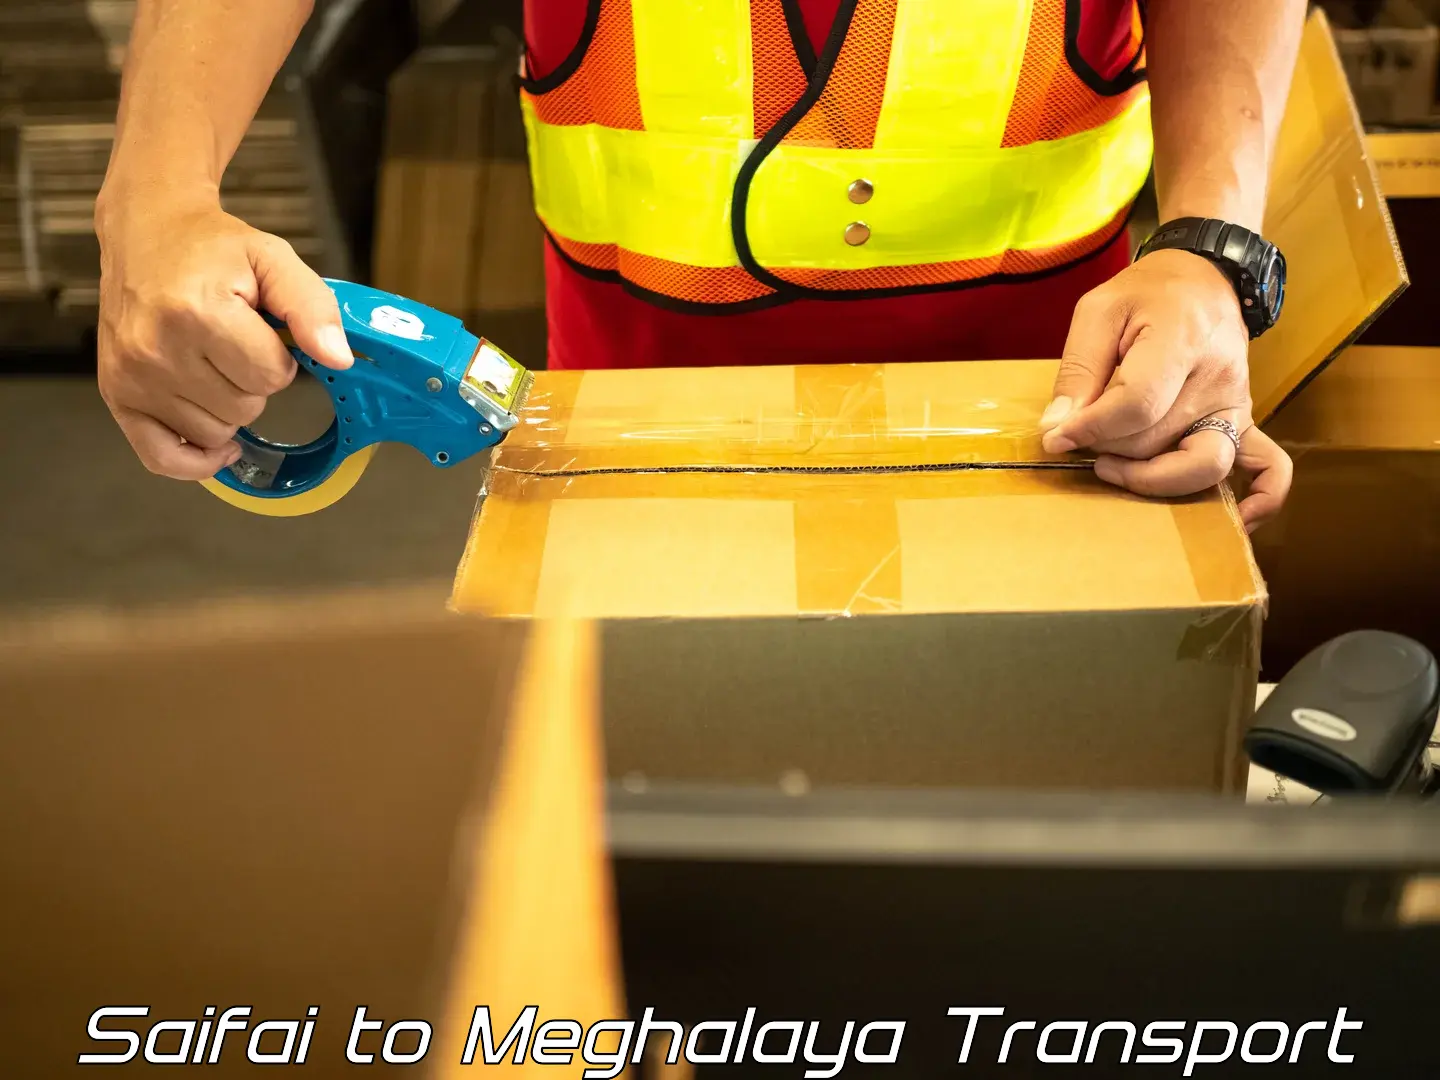 Pick up transport service Saifai to Meghalaya